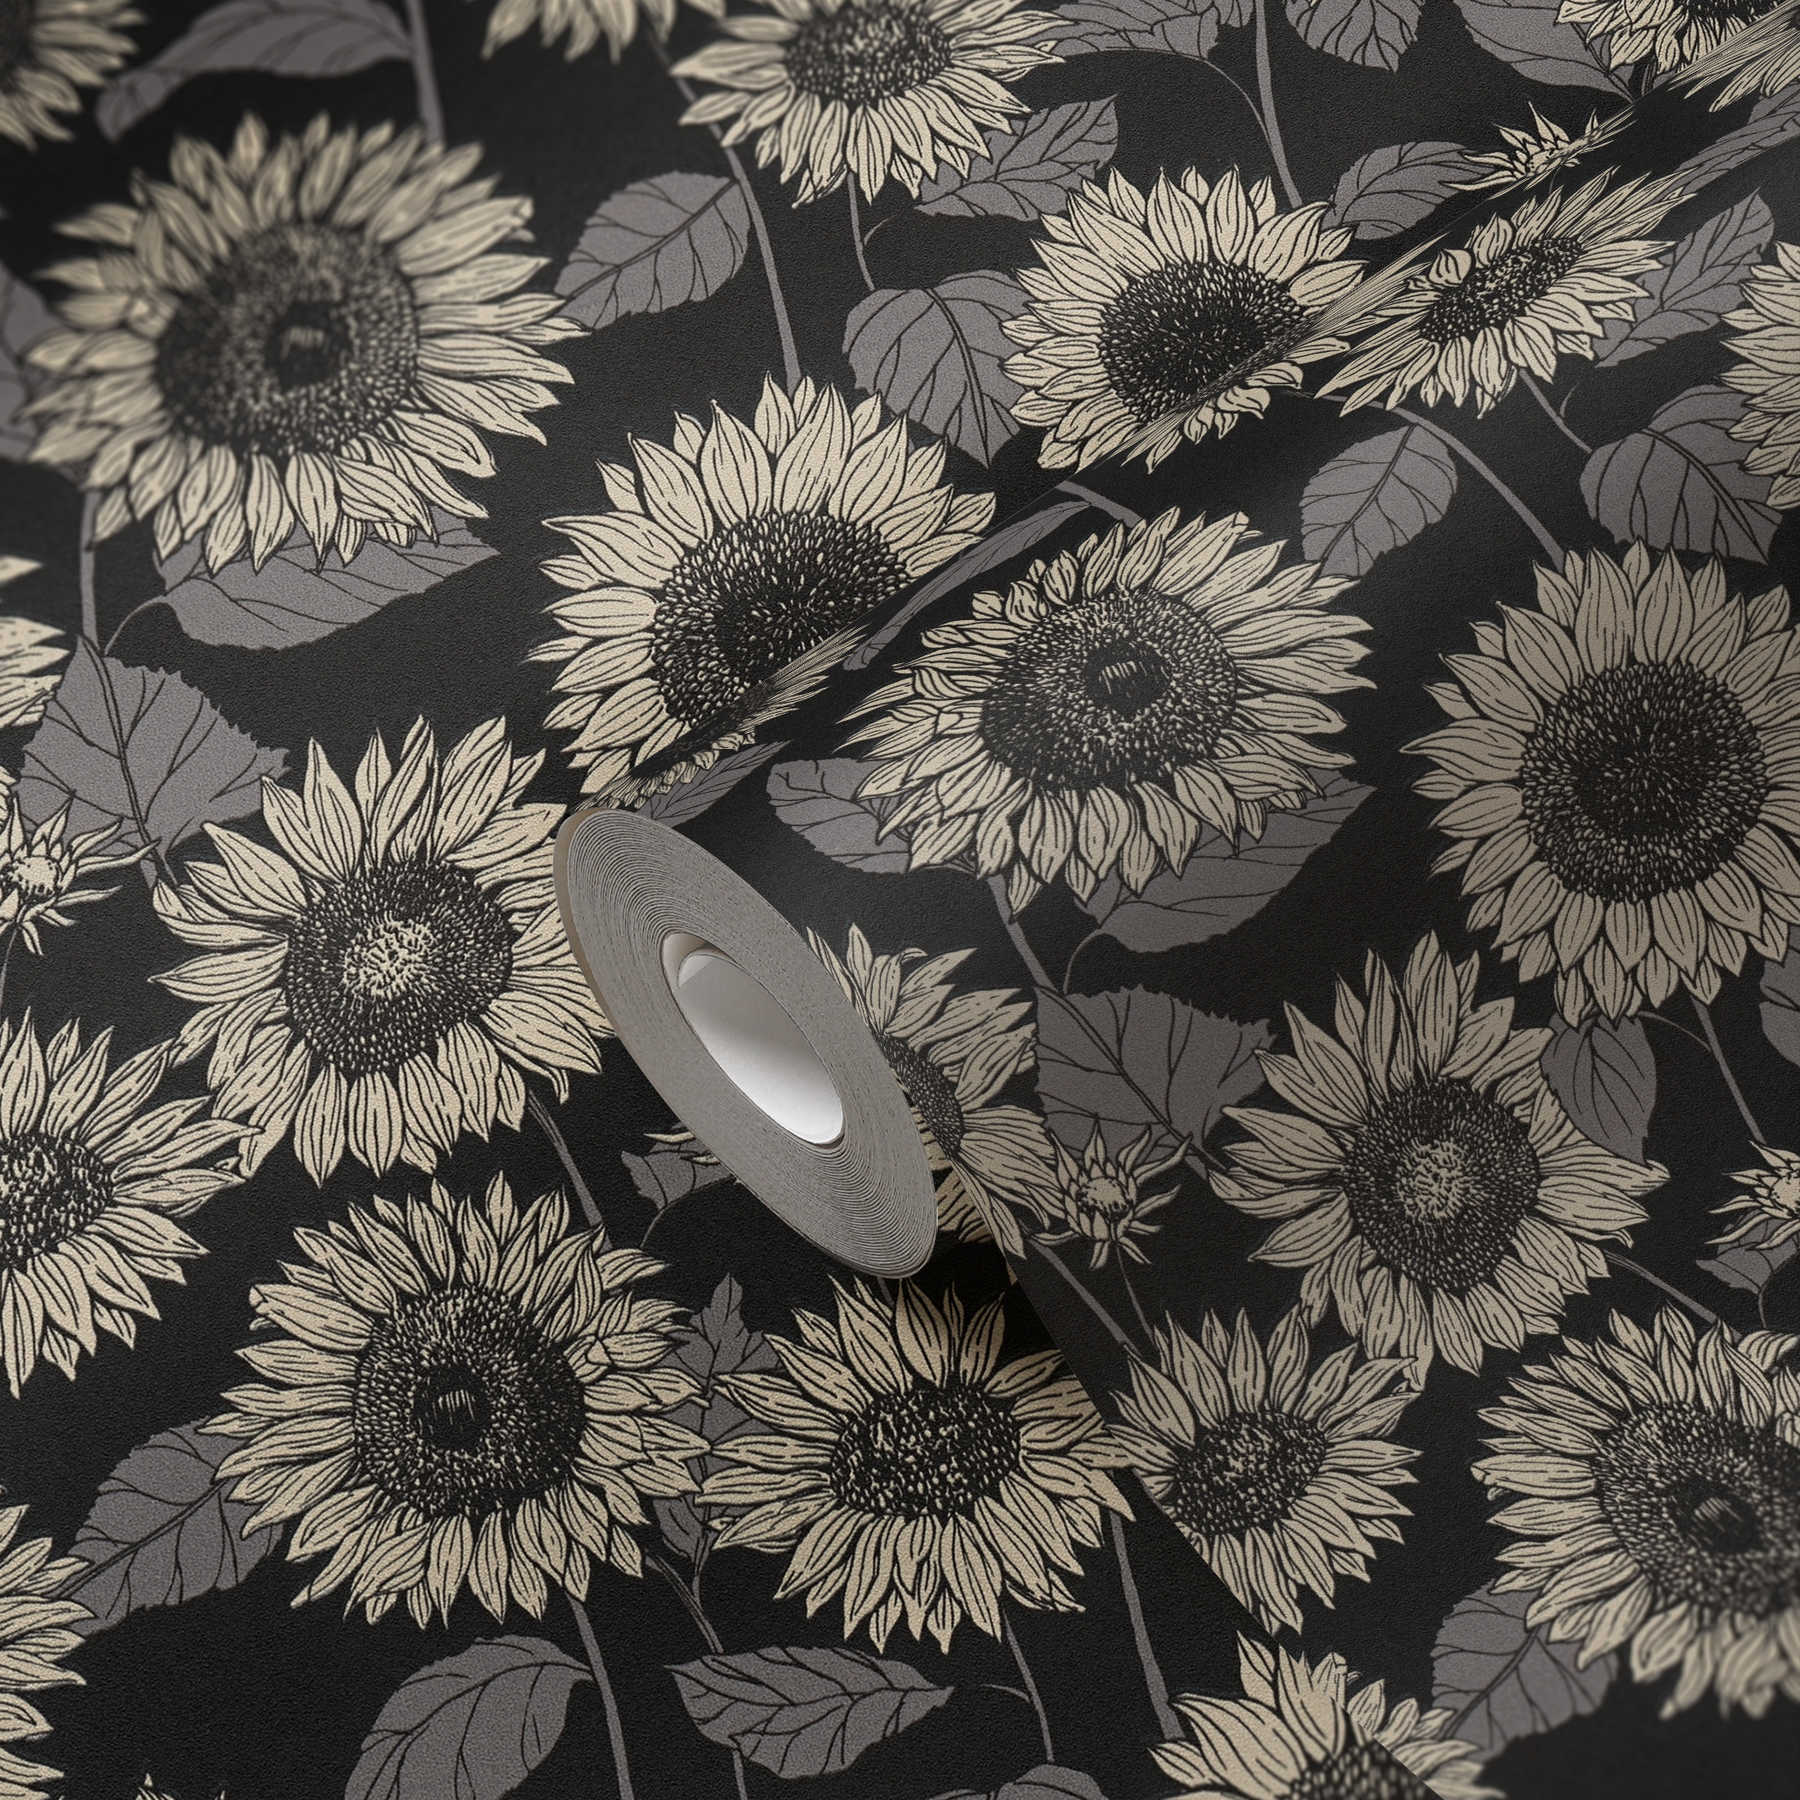             Sonnenblumen Tapete mit Metallic-Effekt Blüten – Schwarz, Anthrazit, Grau
        